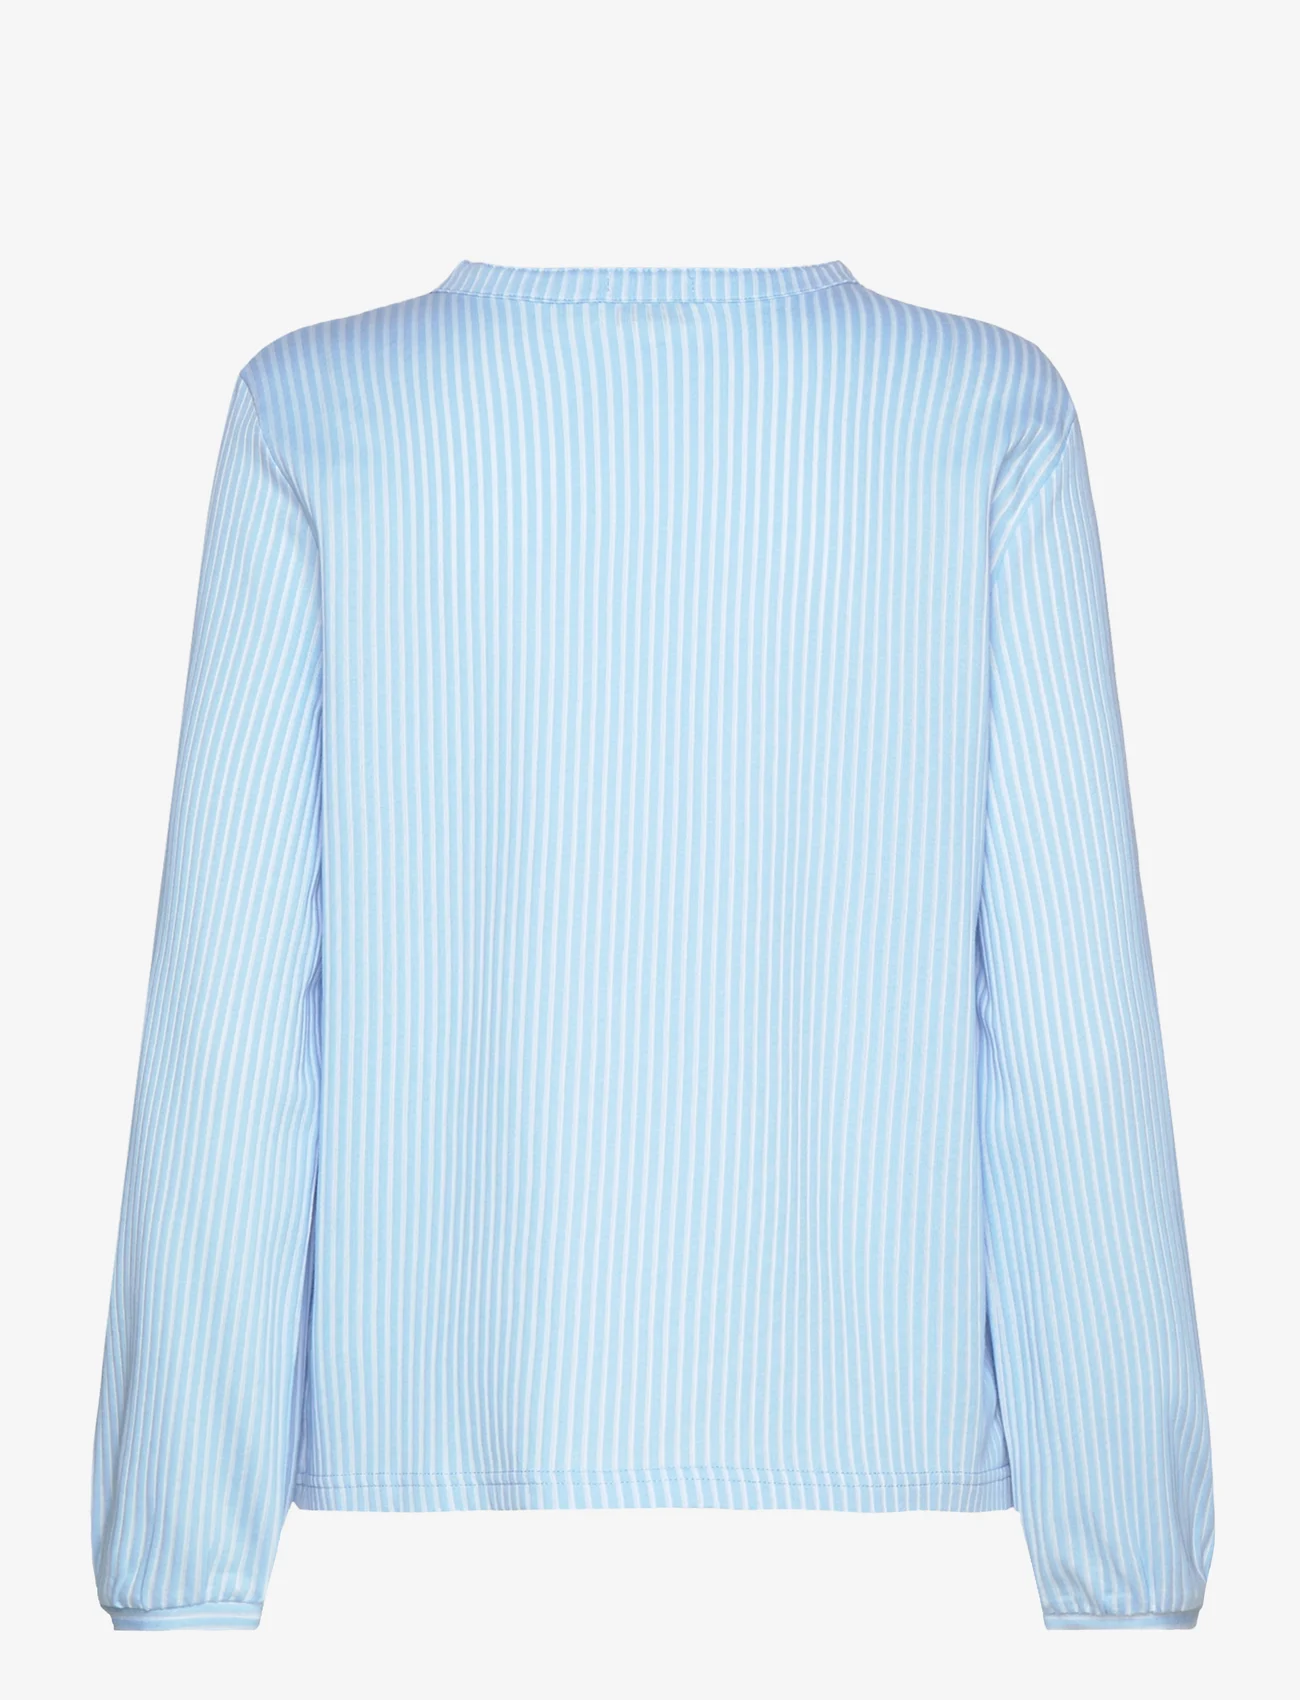 Tom Tailor - T-shirt blouse vertical stripe - long-sleeved blouses - blue white thin stripe - 1